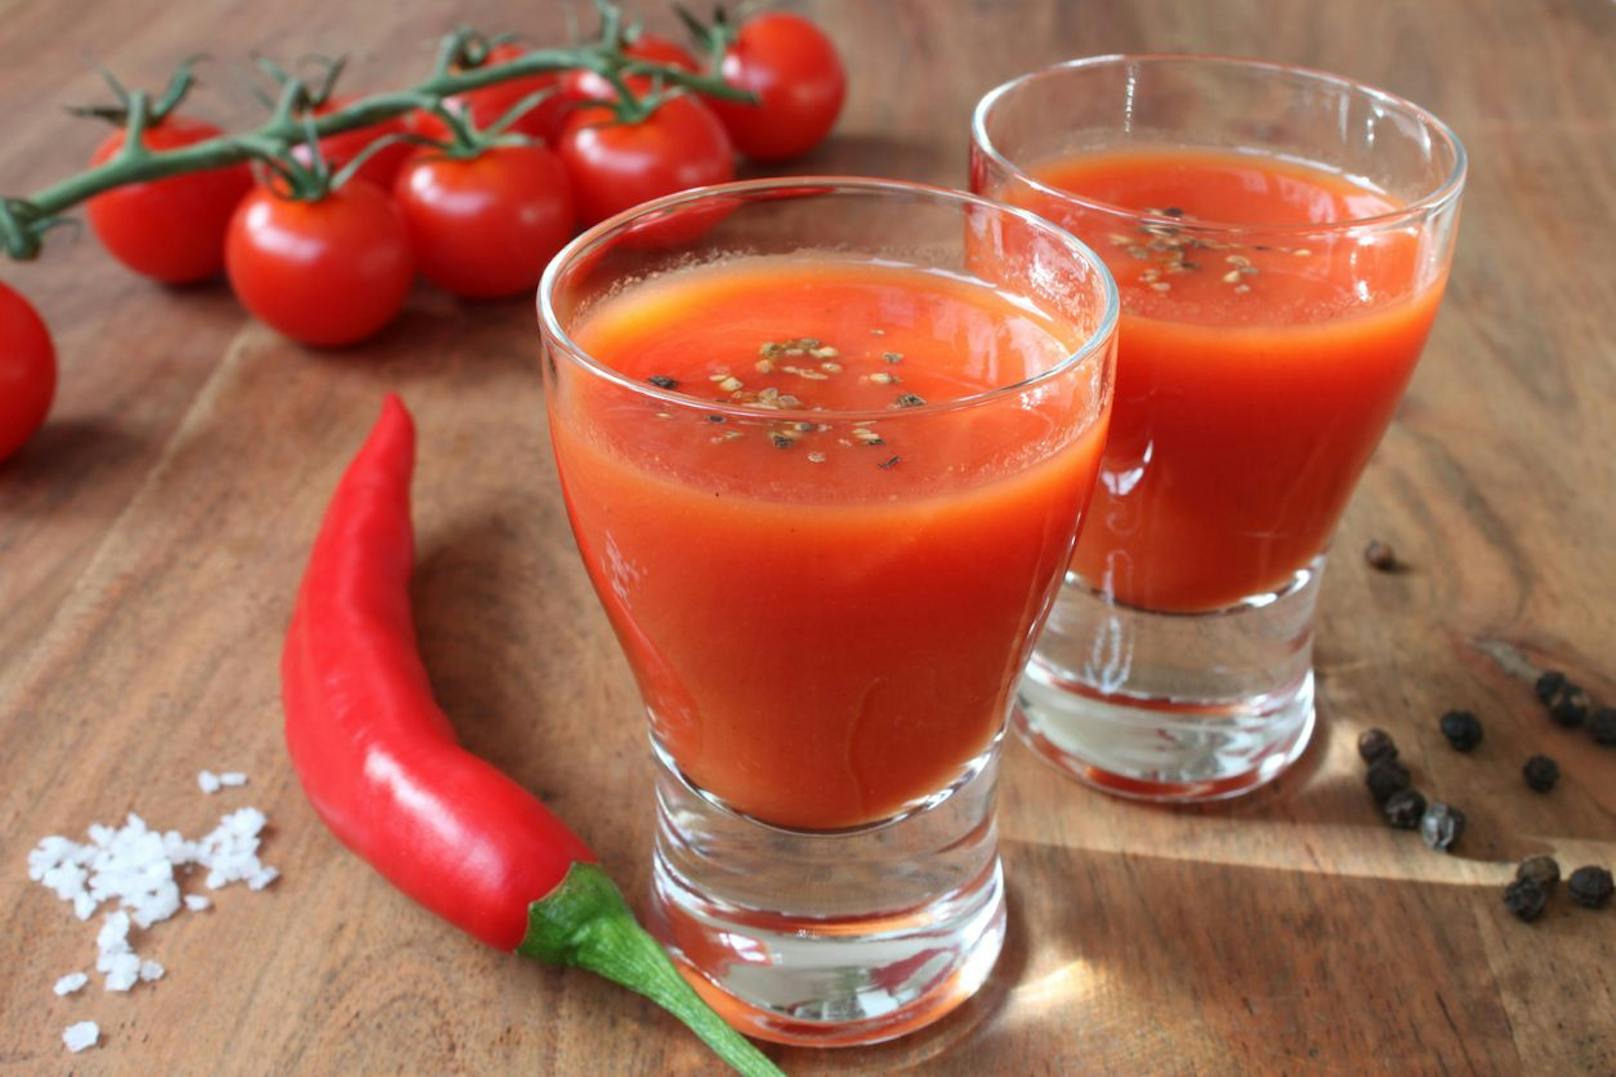 Auch in diesem Tomaten-Buttermilch Drink steckt ordentlich viel Power, um deine Fettverbrennung anzukurbeln. Vermenge 125ml Tomatensaft mit 125 Buttermilch und verfeinere das Ganze mit ein wenig Chilipulver. 